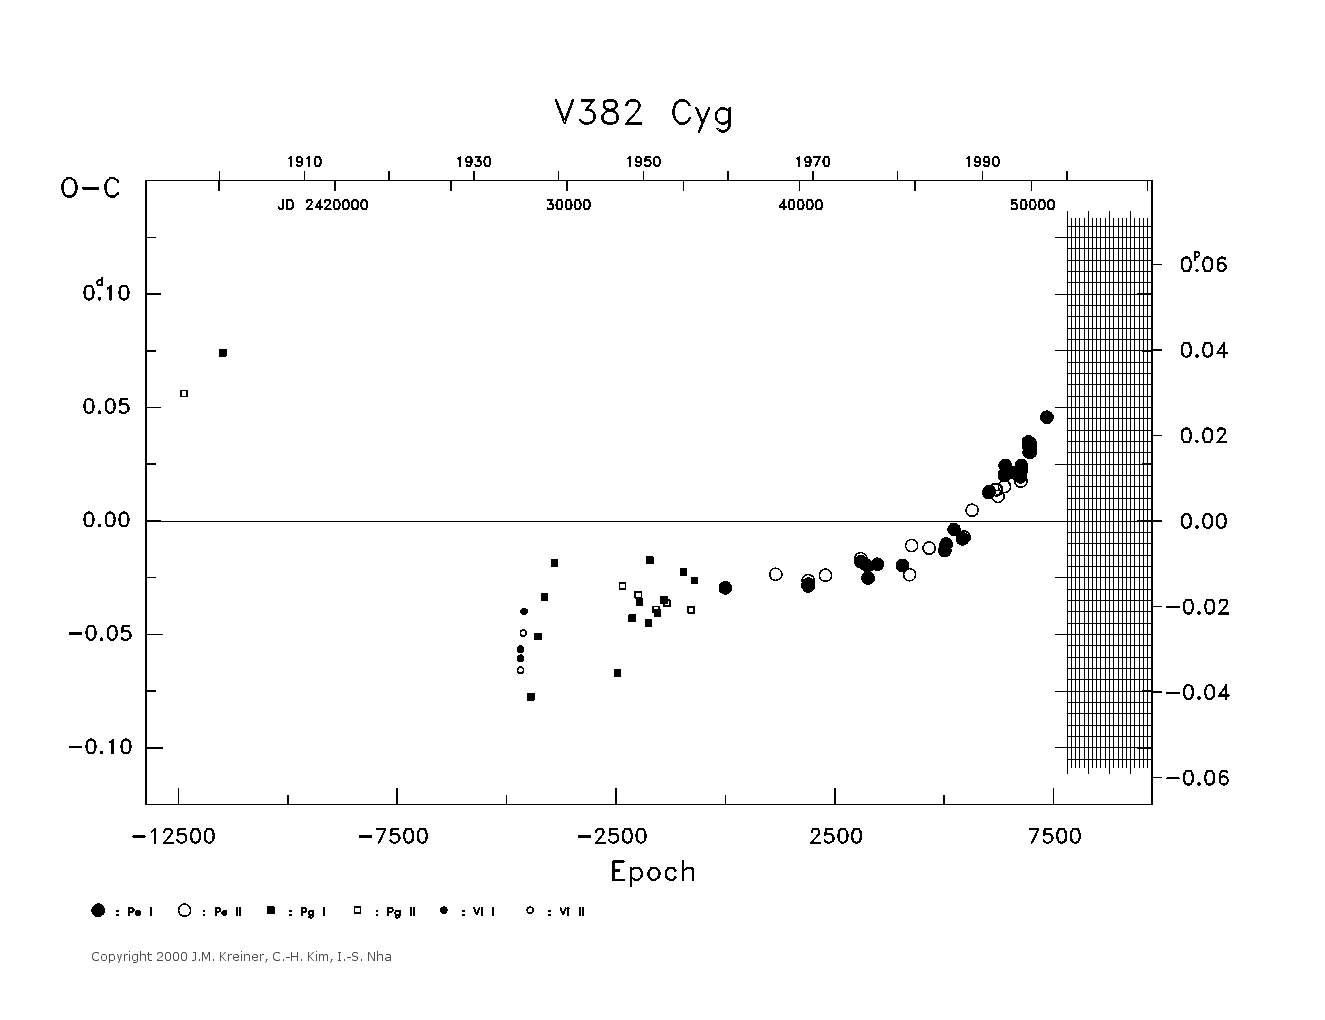 [IMAGE: large V382 CYG O-C diagram]